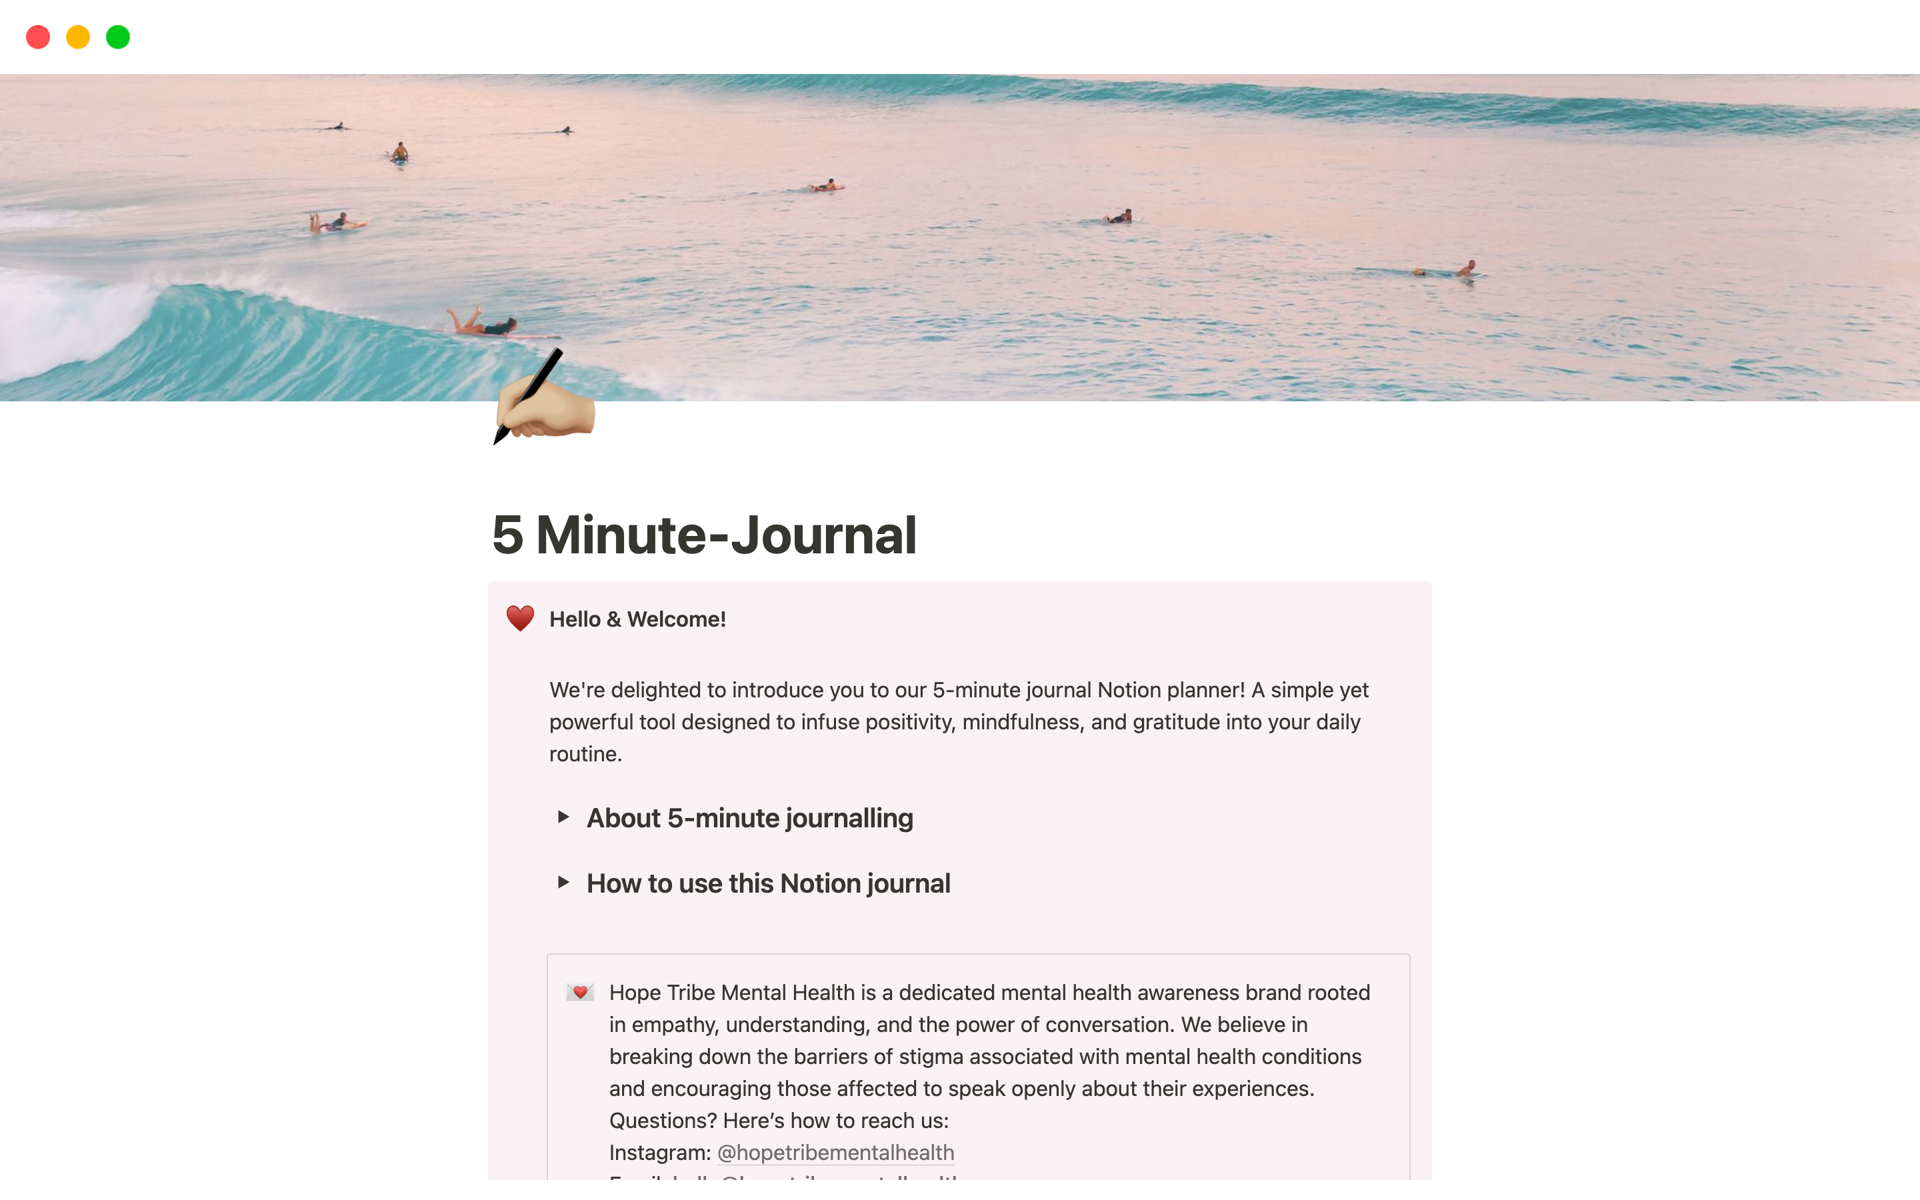 Uma prévia do modelo para 5 Minute-Journal